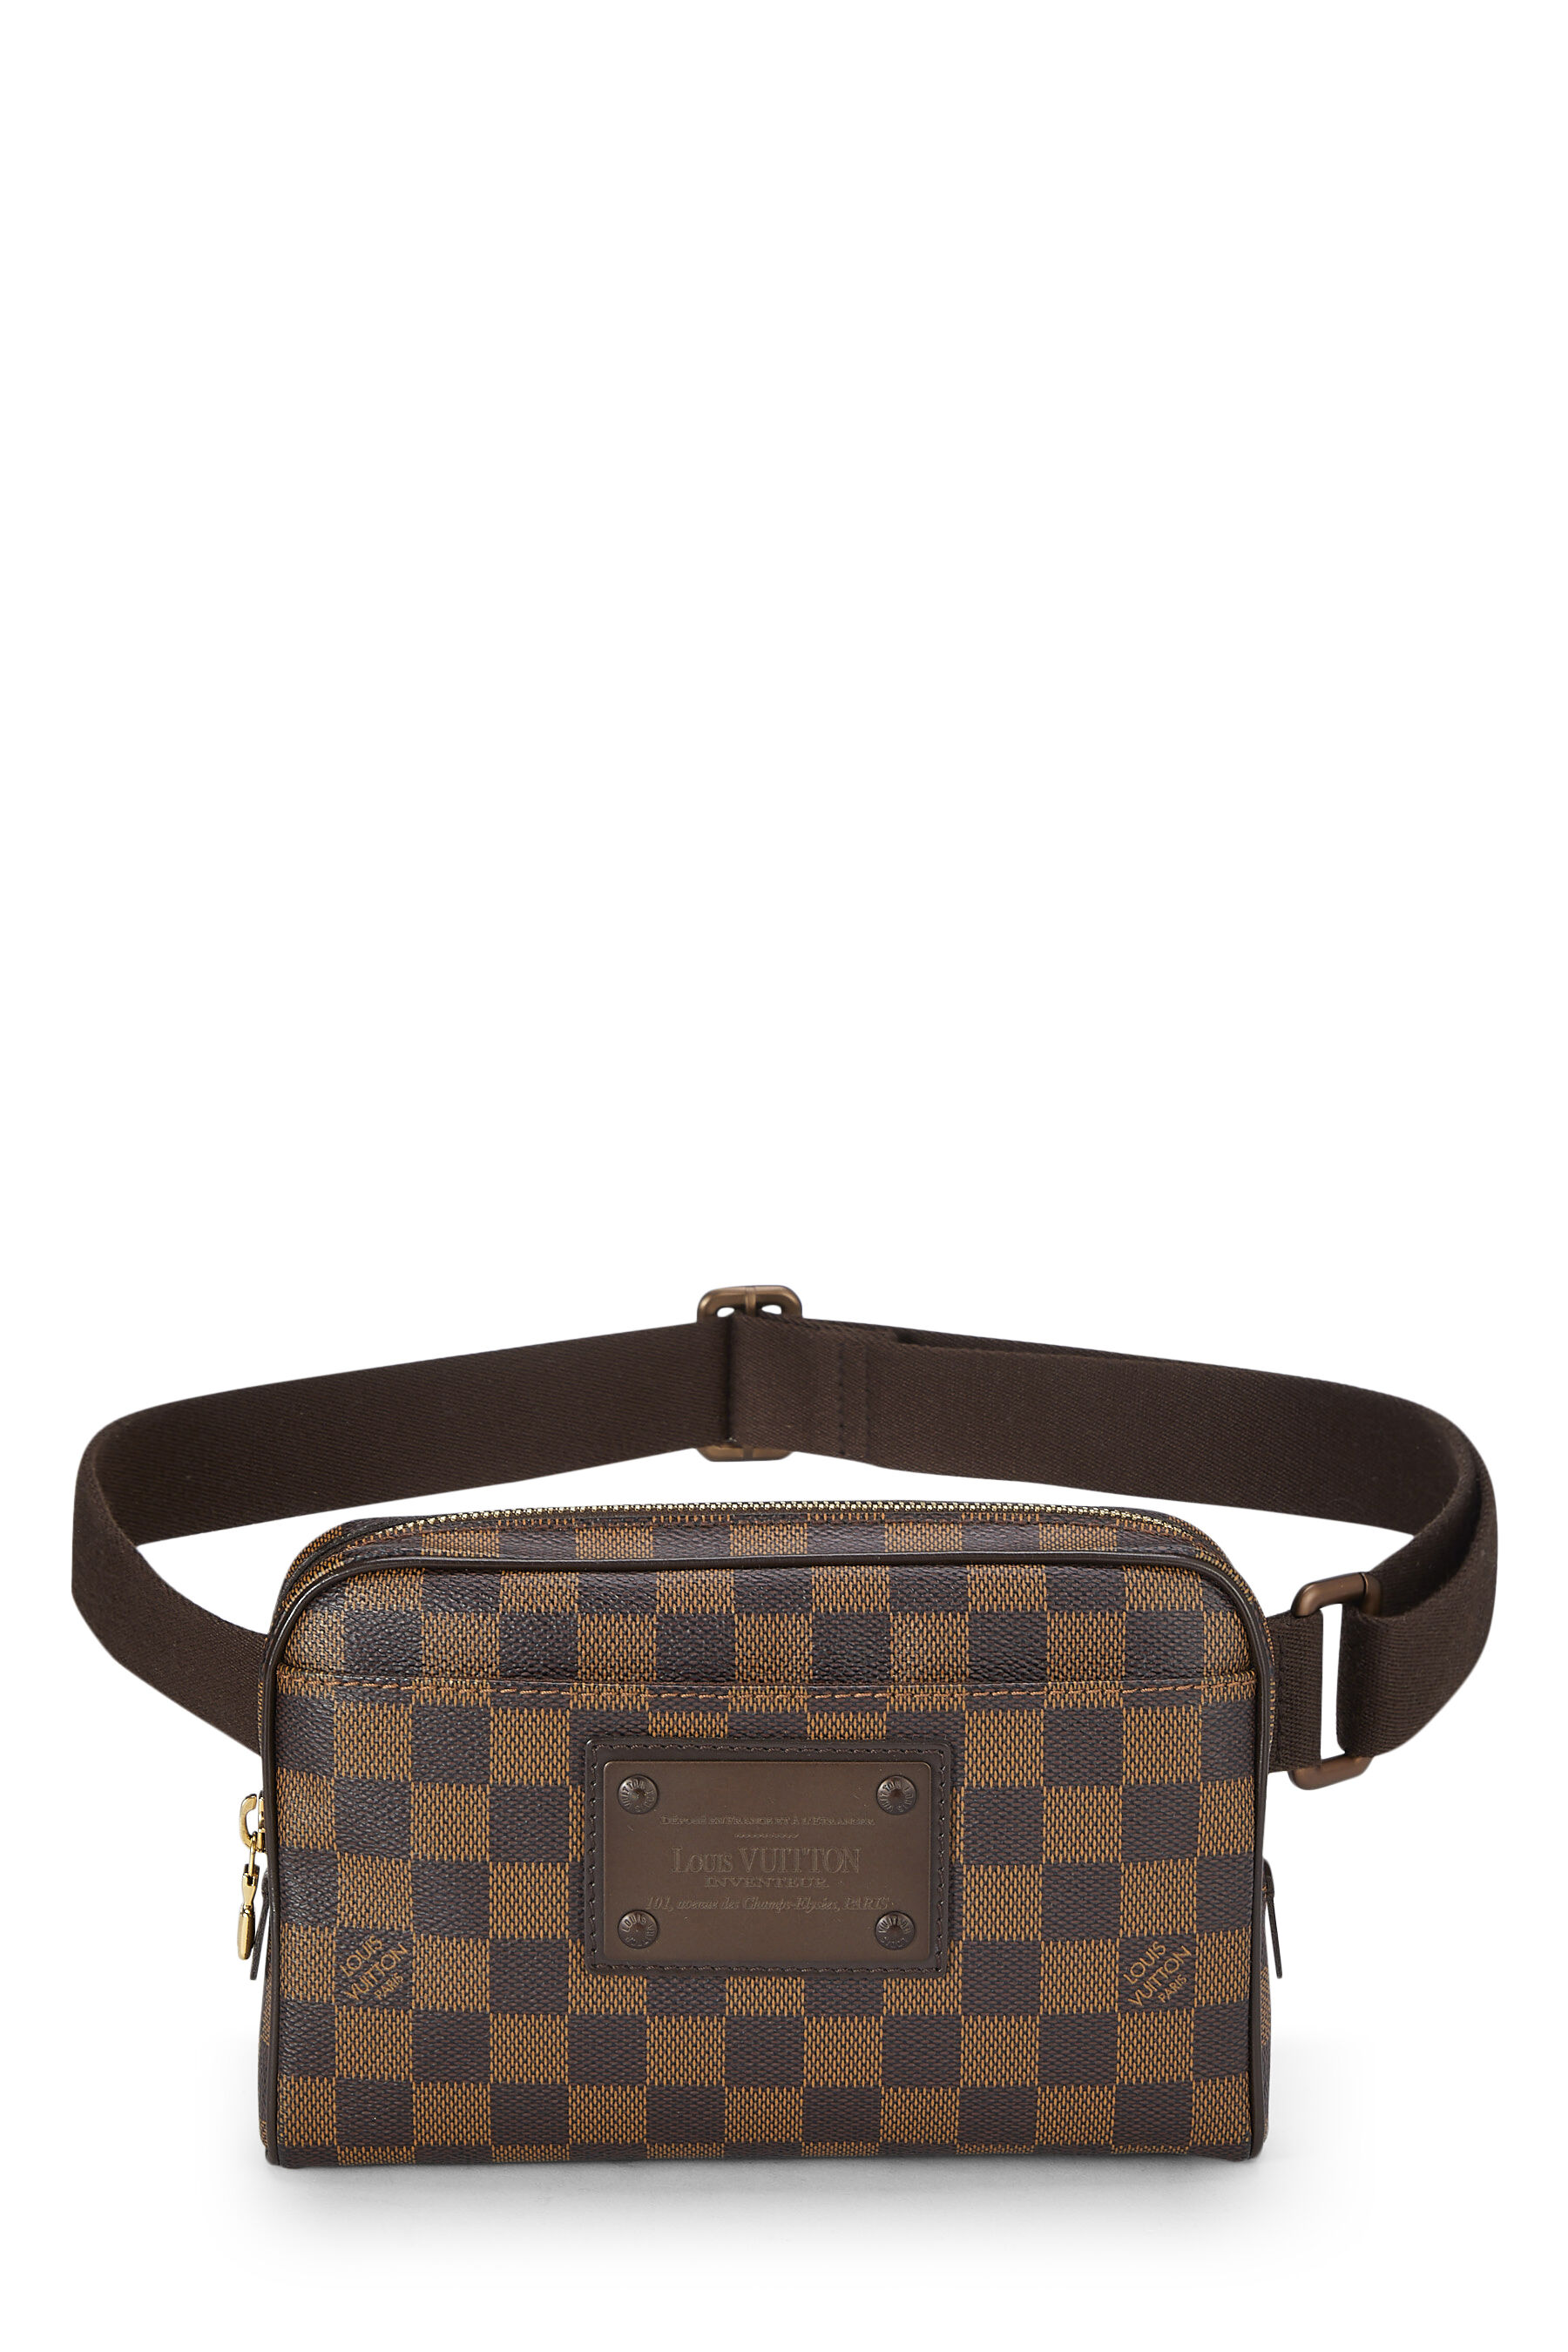 Louis Vuitton 2011 pre-owned Damier Ebène Brooklyn belt bag - ShopStyle